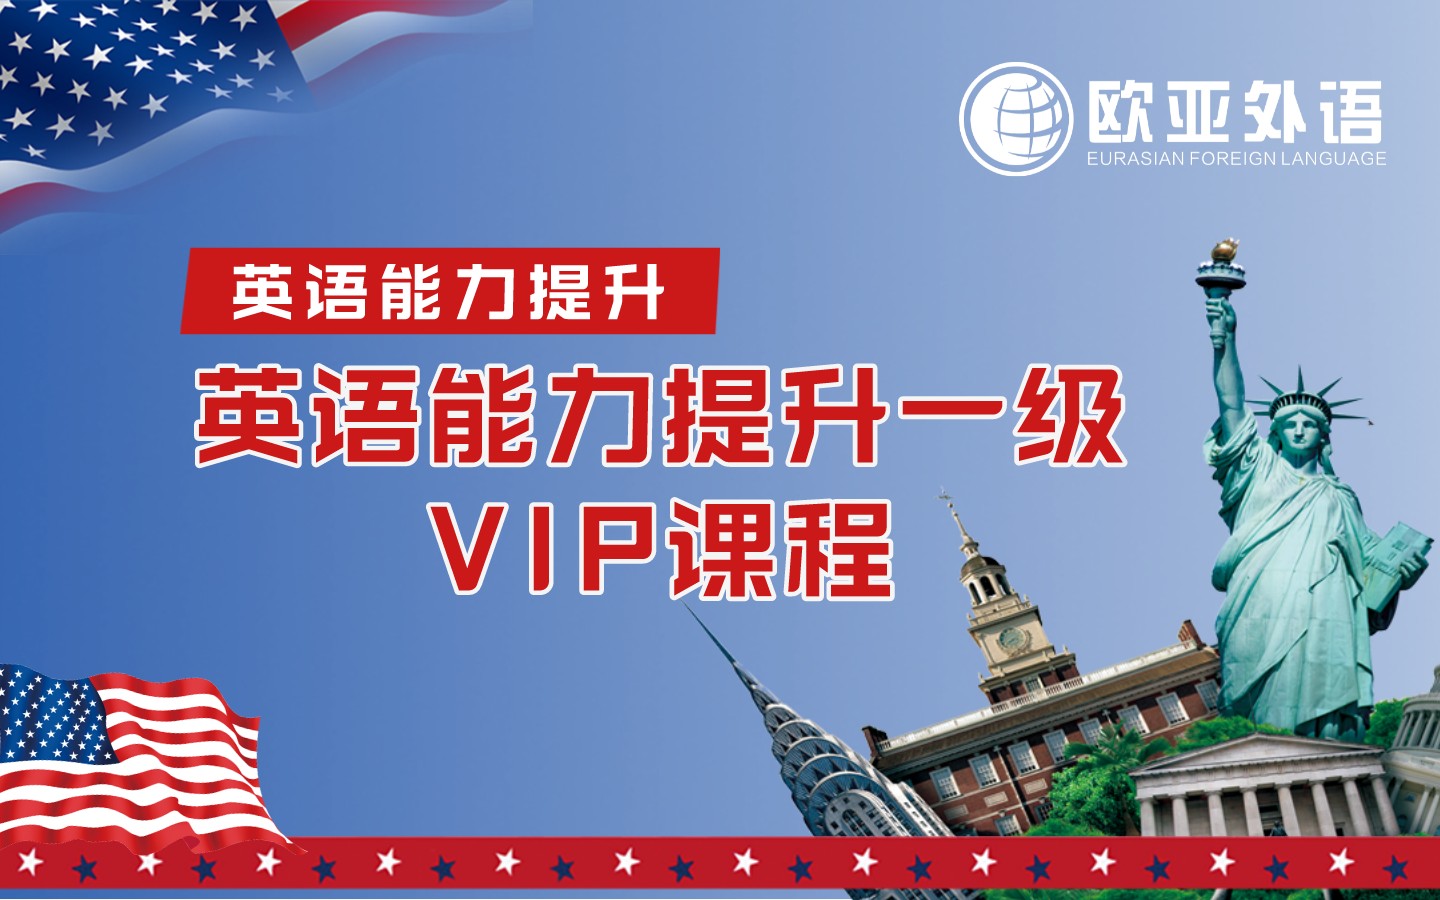 【武汉欧亚外语】英语能力提升一级VIP课程